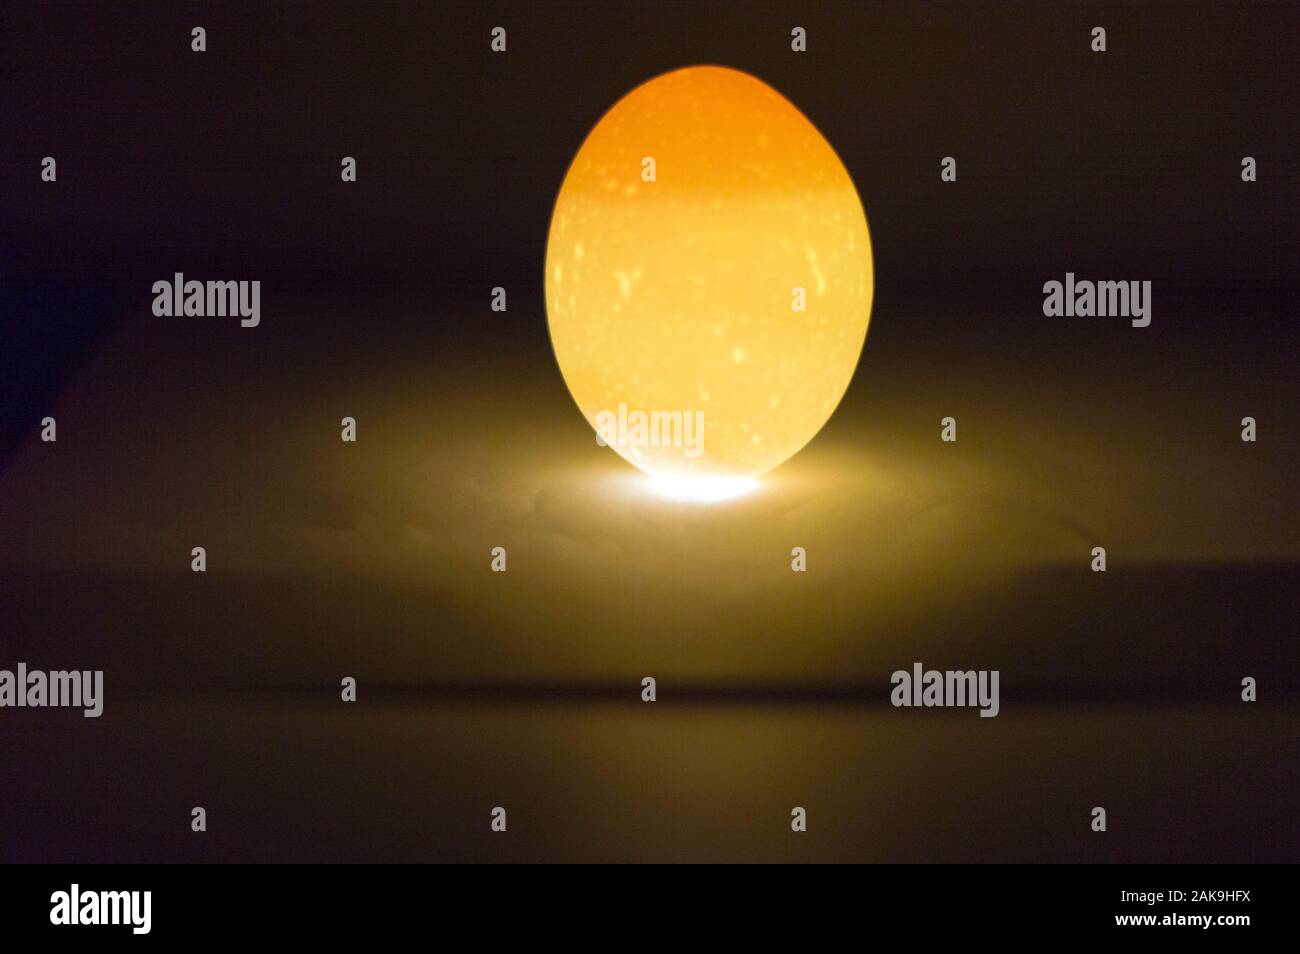 Hühnerei Hintergrundbeleuchtung von unten mit einem Telefon Taschenlampe. Das Eigelb, Eiweiß und Shell Struktur sichtbar sind. Makrofotos. Stockfoto